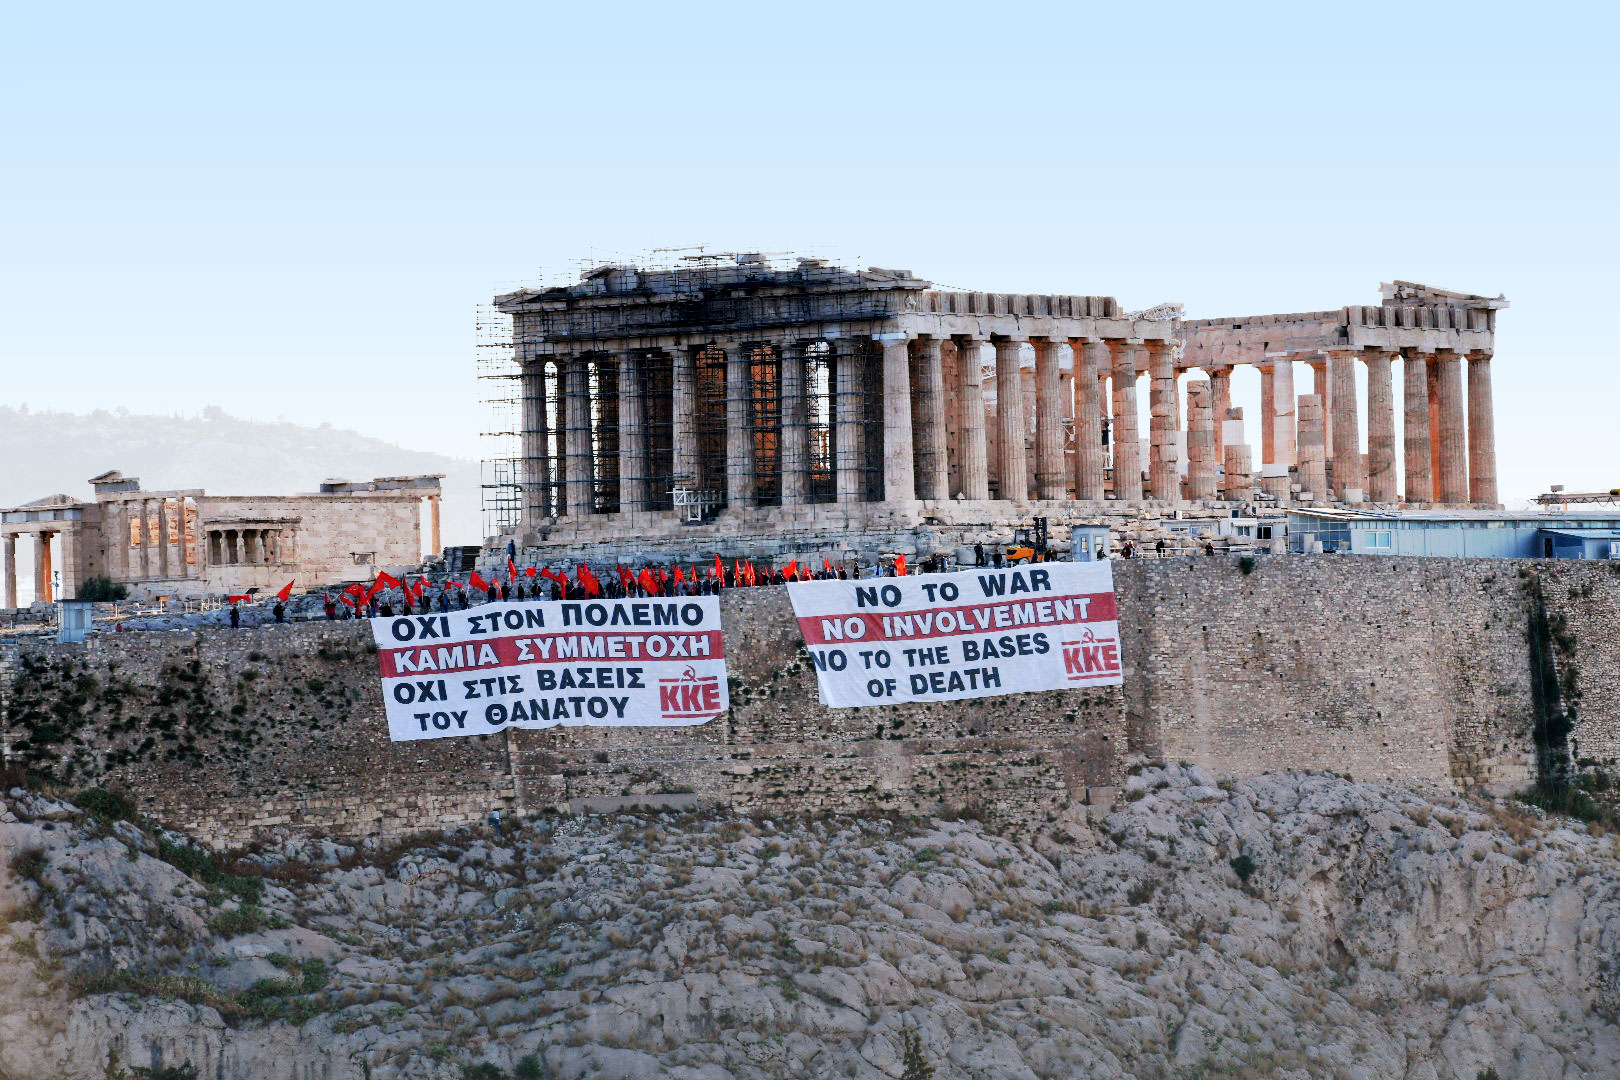 Πανό του ΚΚΕ στην Ακρόπολη: «Όχι στον πόλεμο, καμία συμμετοχή»